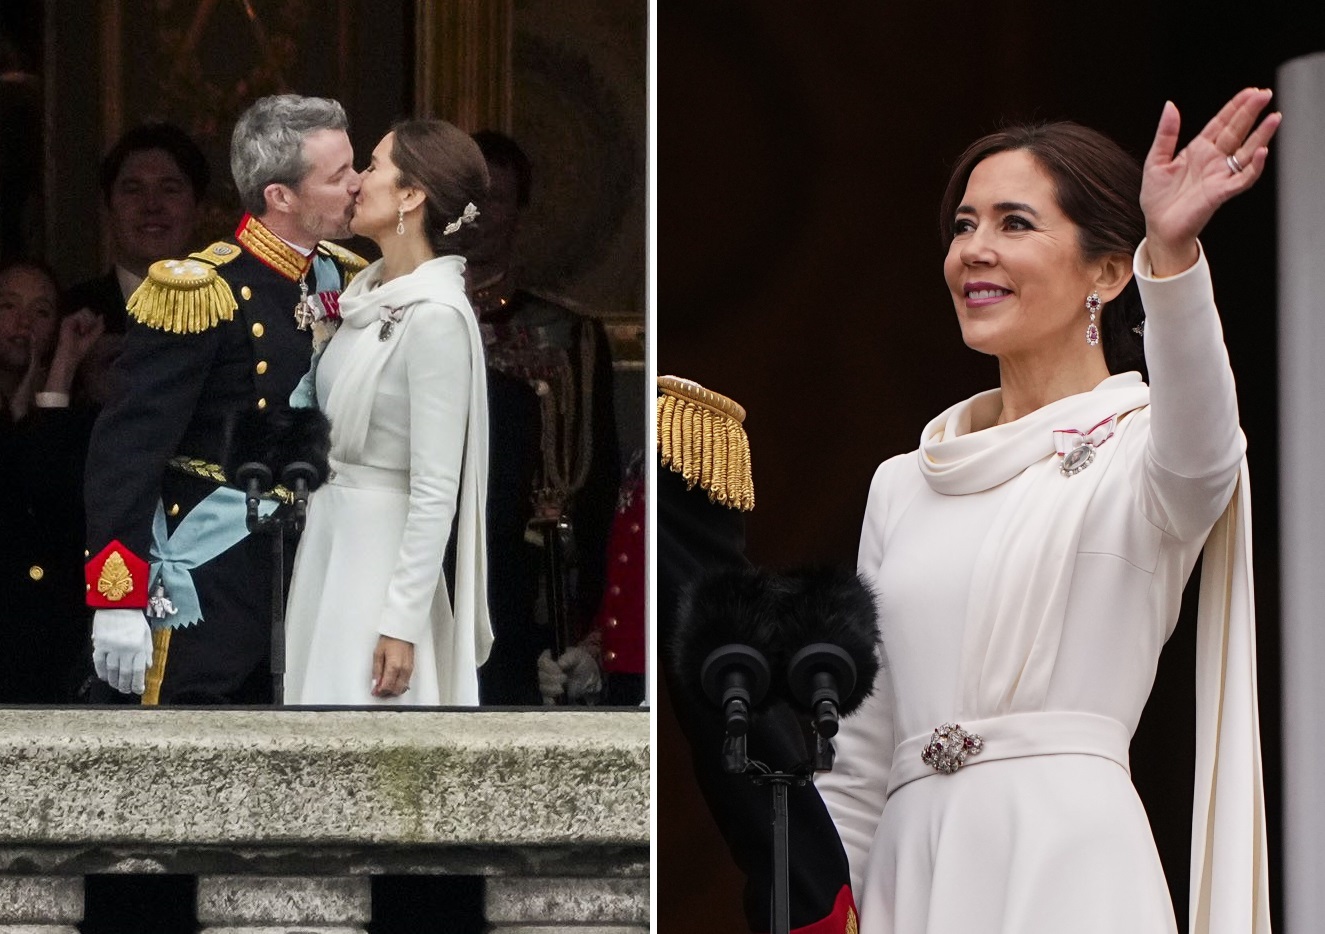 El sofisticado look de la reina Mary para la coronación: de blanco y con unas joyas muy especiales